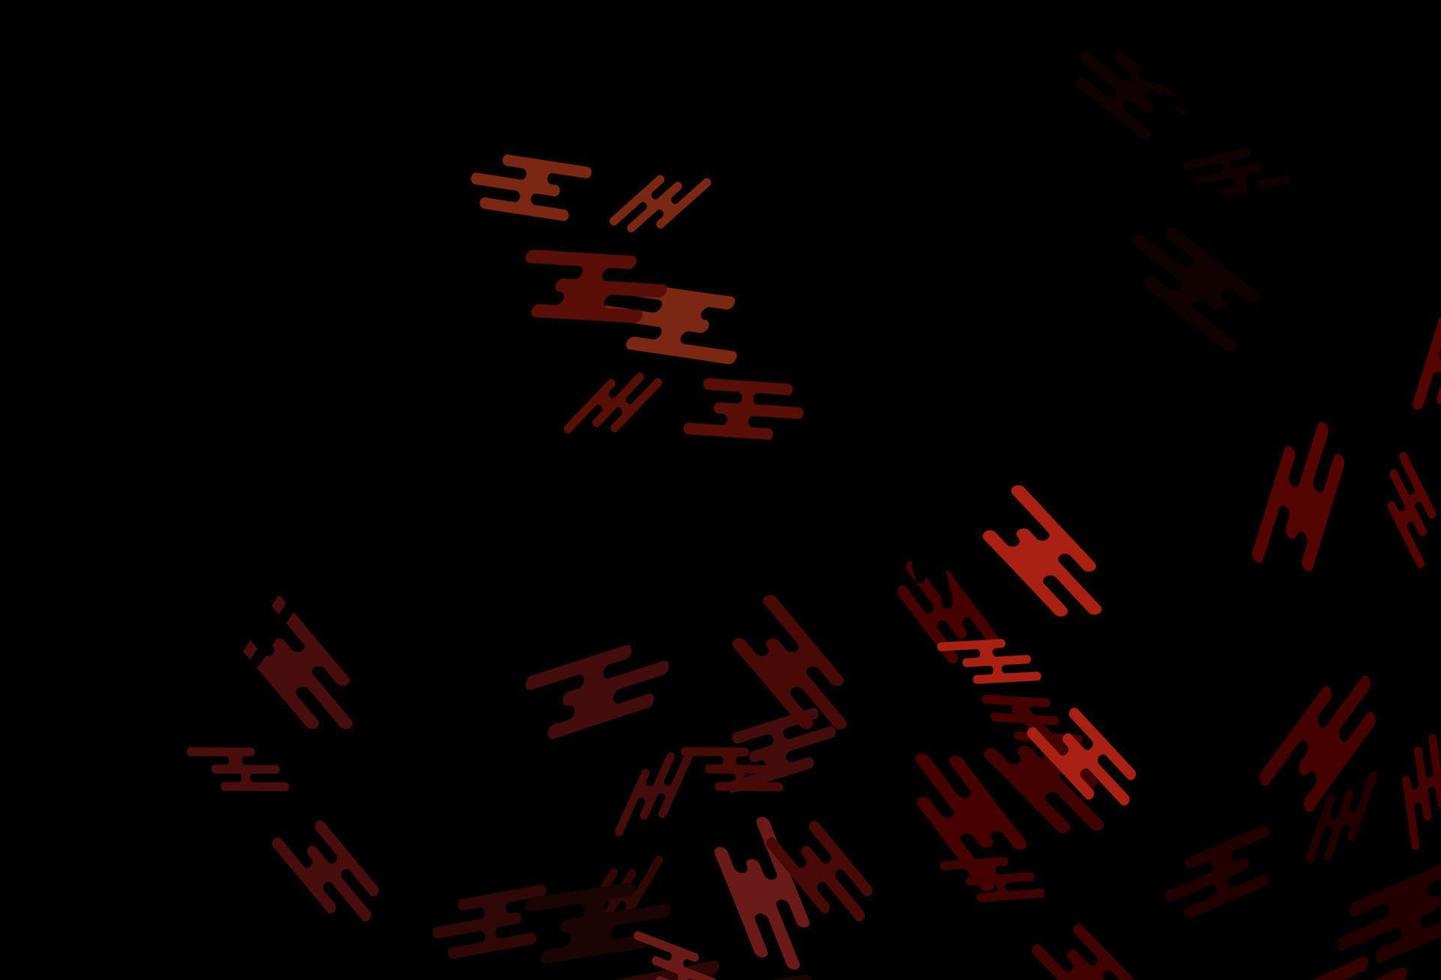 padrão de vetor vermelho escuro com linhas estreitas.